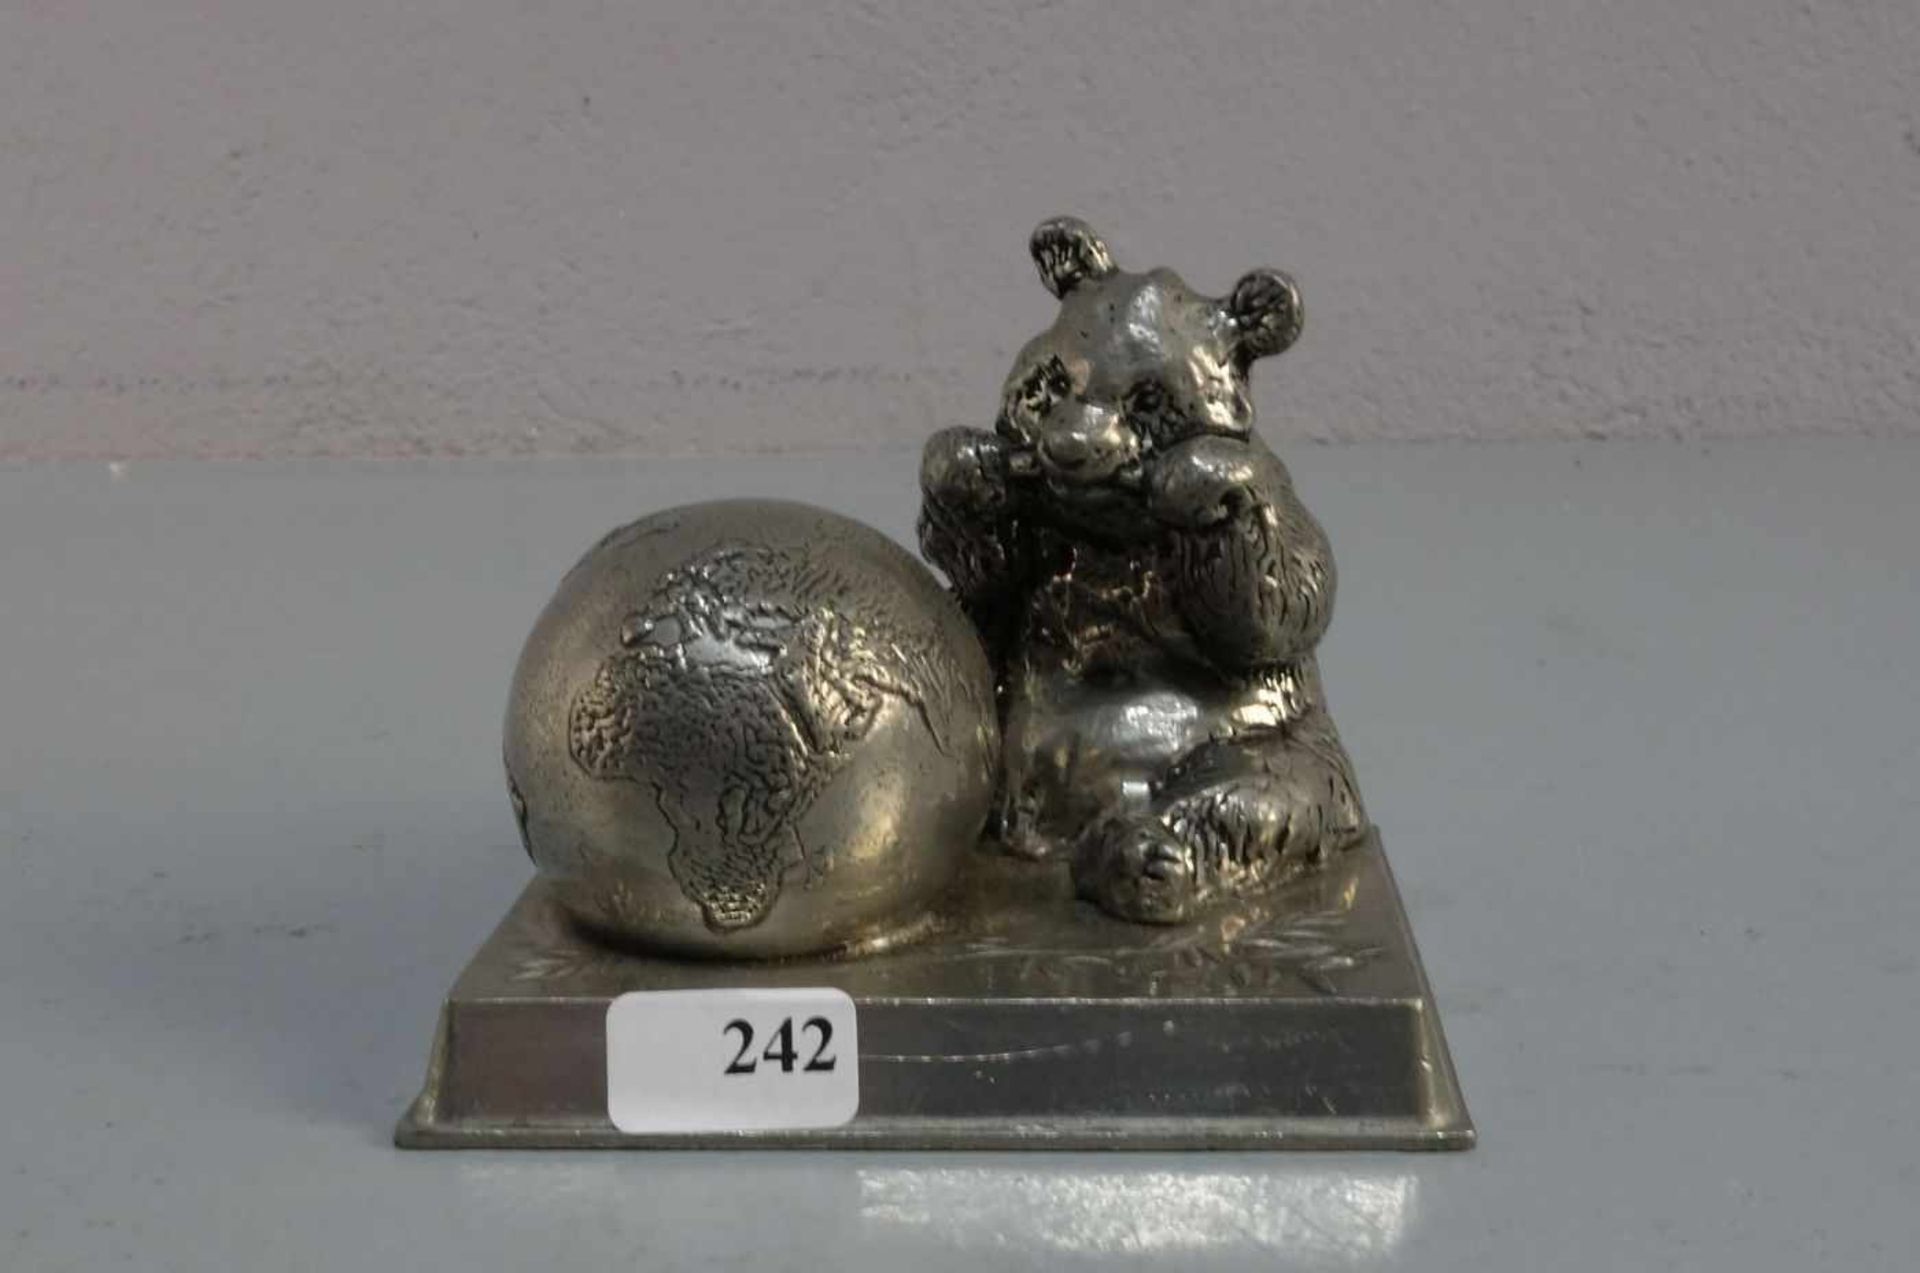 SKULPTUR / sculpture: "Panda - Bär und Weltkugel", aus der Serie der WWF - Figuren (Word Wildlife